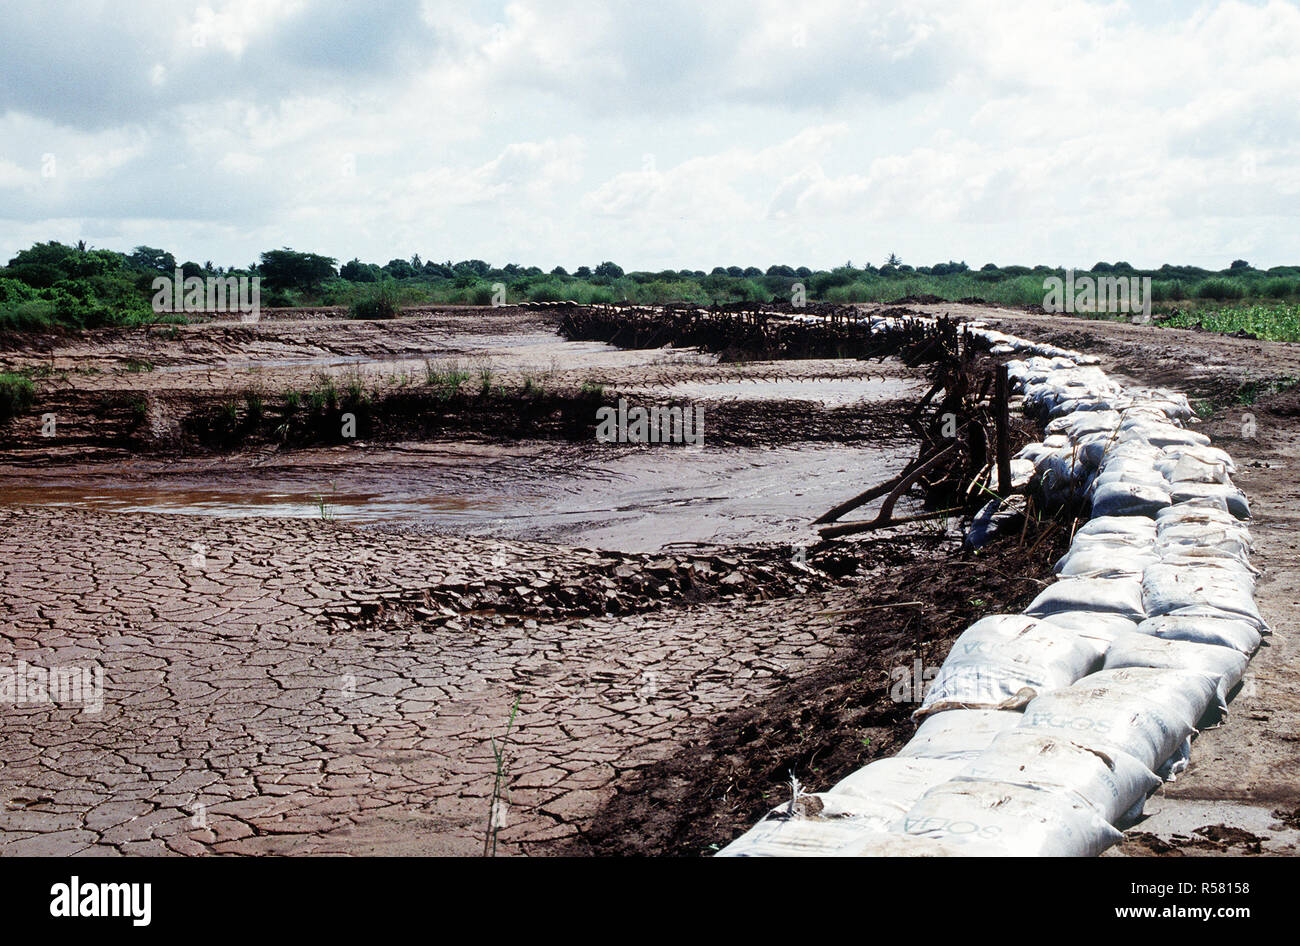 1993 - Un barrage construit par le contingent belge de contrôler les eaux de crue dans la région de Kismayo. Les belges font partie des forces des Nations Unies en Somalie dans le cadre de l'opération continuent d'espoir. Banque D'Images